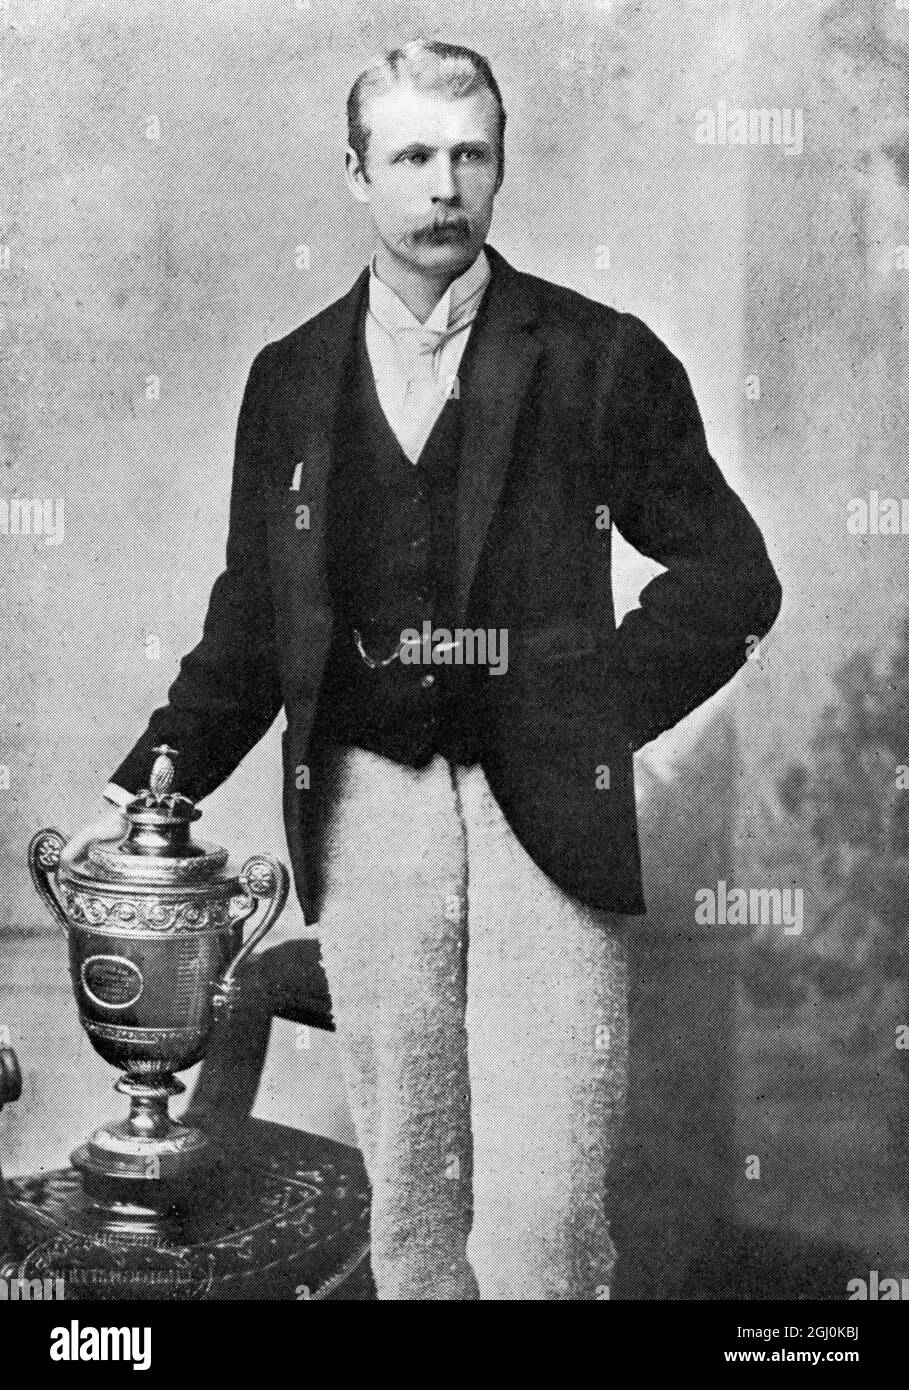 W. J. Hamilton en 1890 - Willoughby Hamilton (né sous le nom de James Willoughby ''Willoby'' Hamilton le 9 décembre 1864 à Monasterevin - décédé le 27 septembre 1943 à Dublin) était un joueur de tennis irlandais. Il a remporté les championnats de Wimbledon en 1890. ©TopFoto Banque D'Images